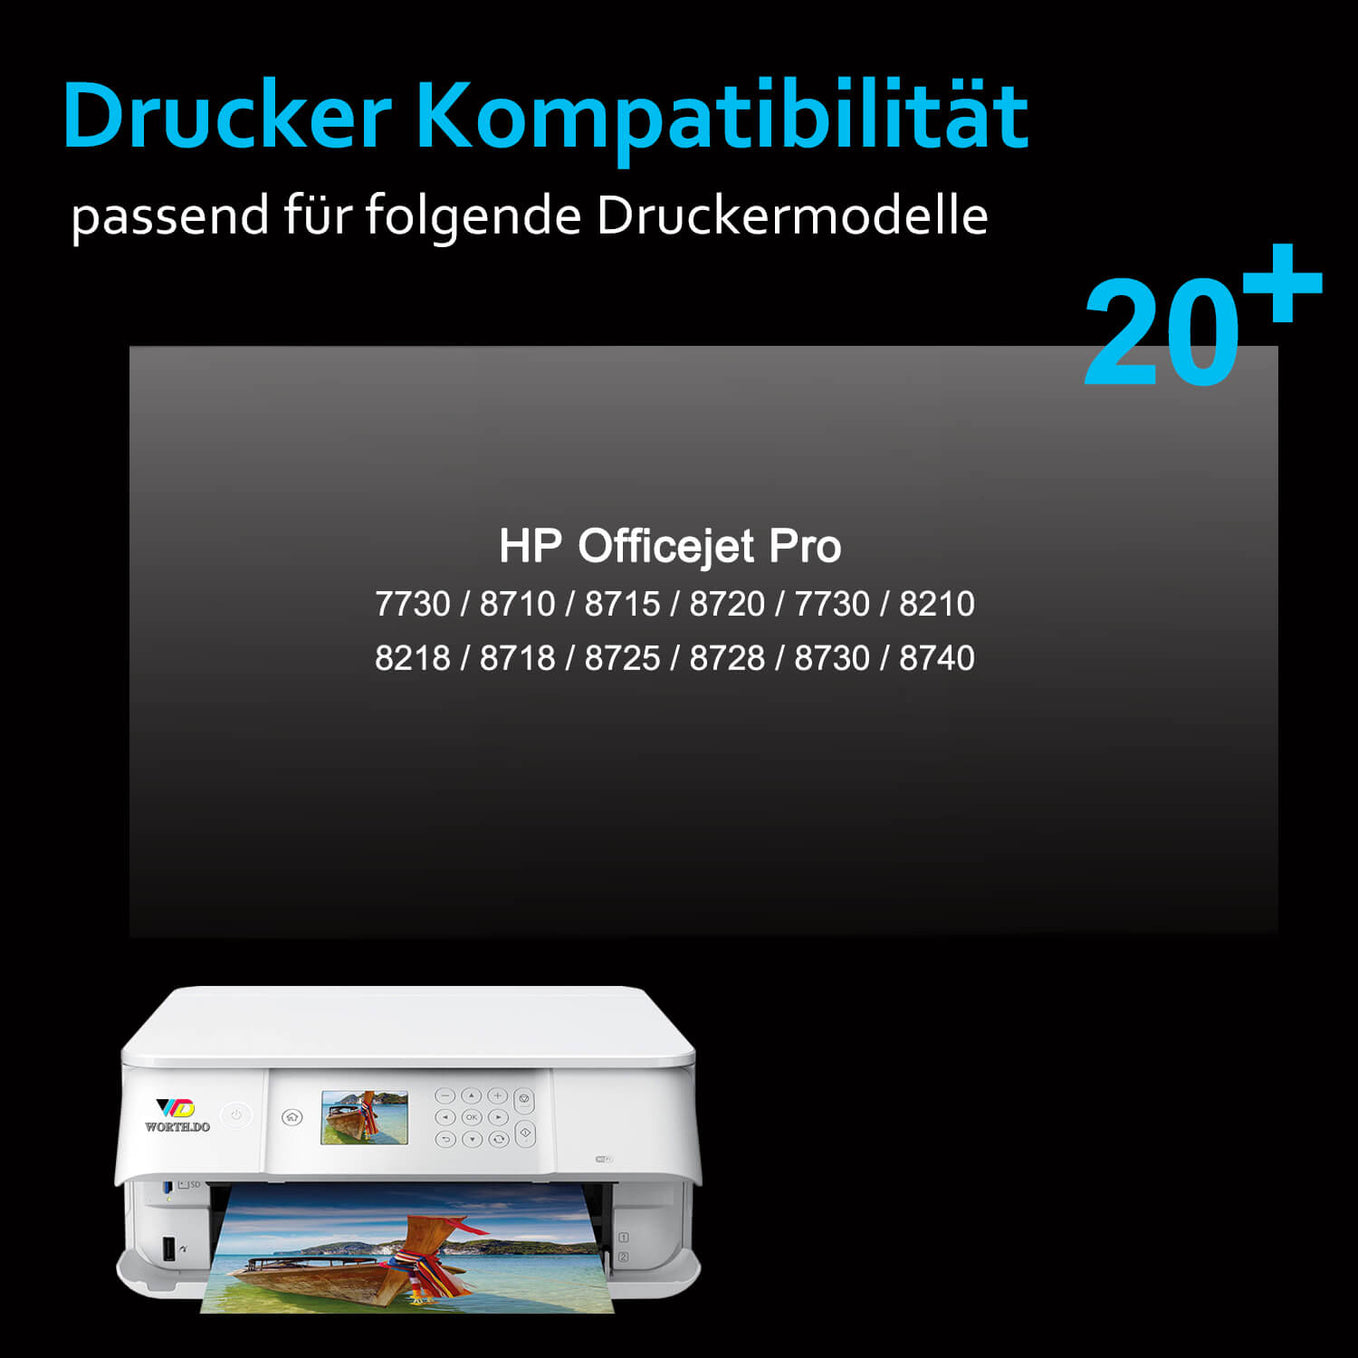       hp-953xl-tintenpatronen-drucker-kompatibilitaet-worth.do